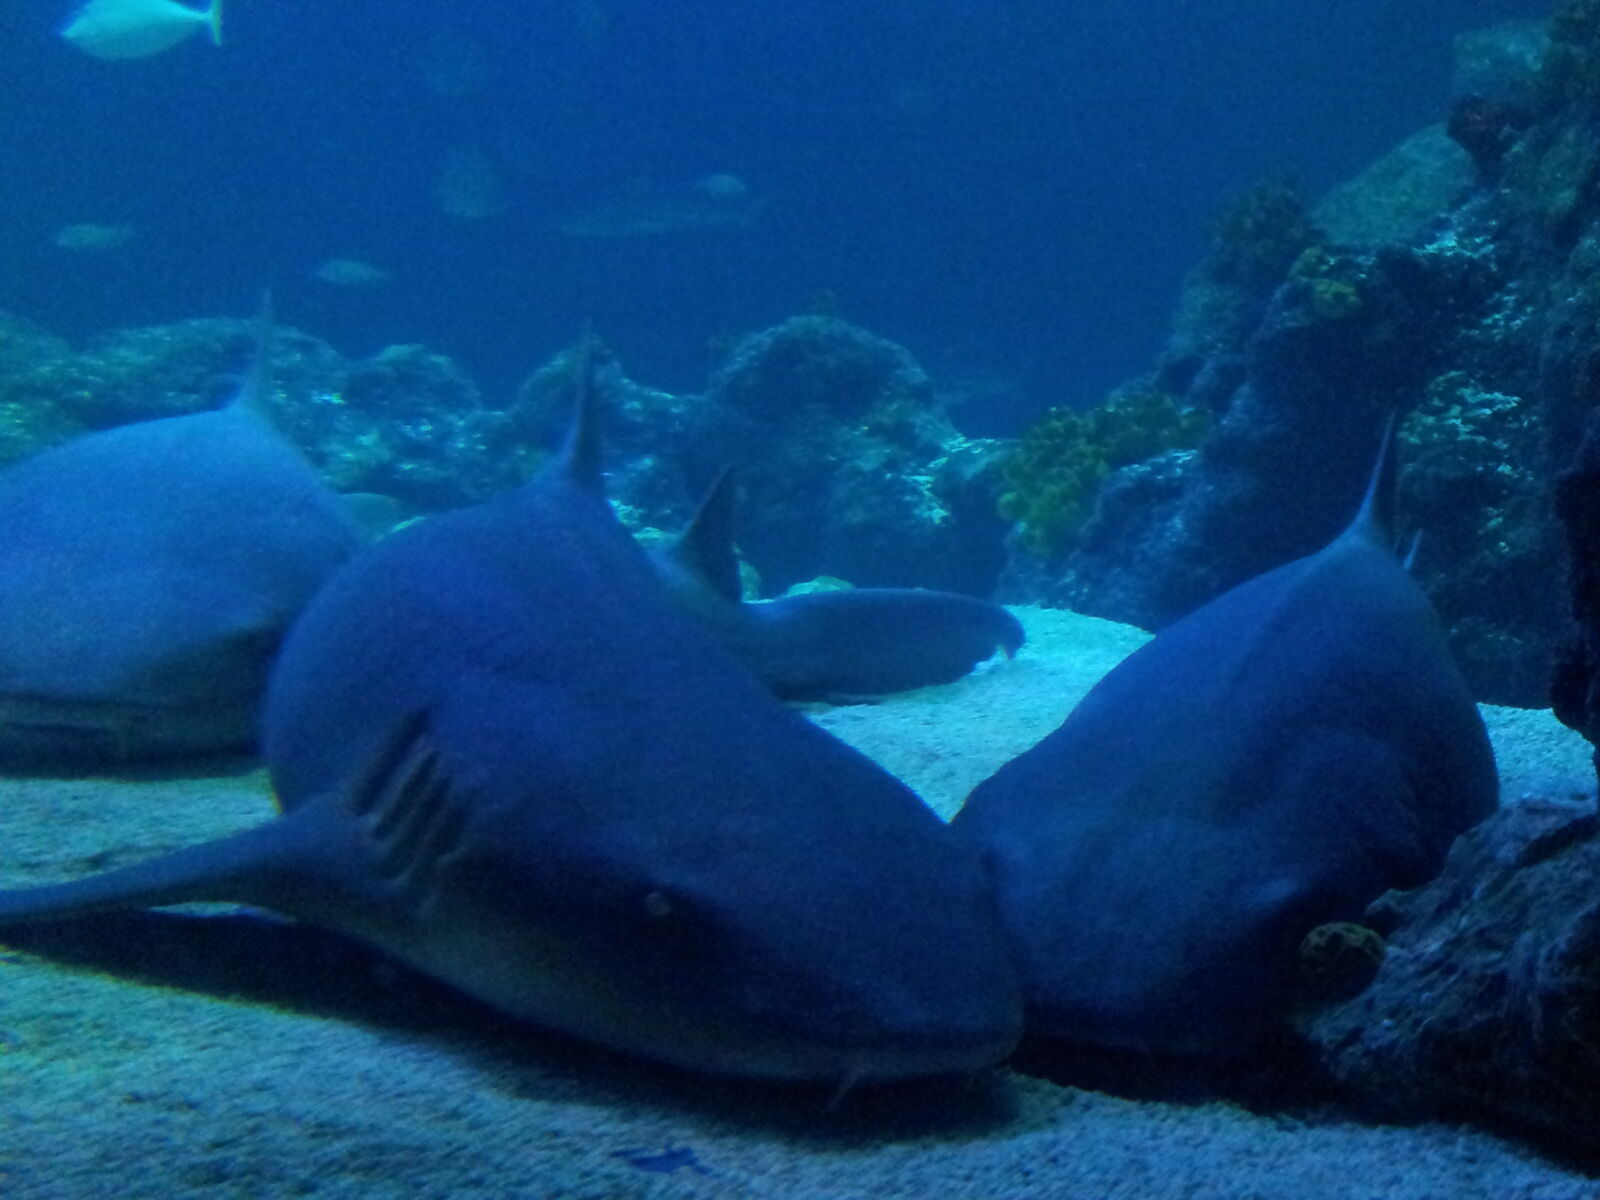 Samsung Galaxy S2 sample photo. Shark, sharks photography